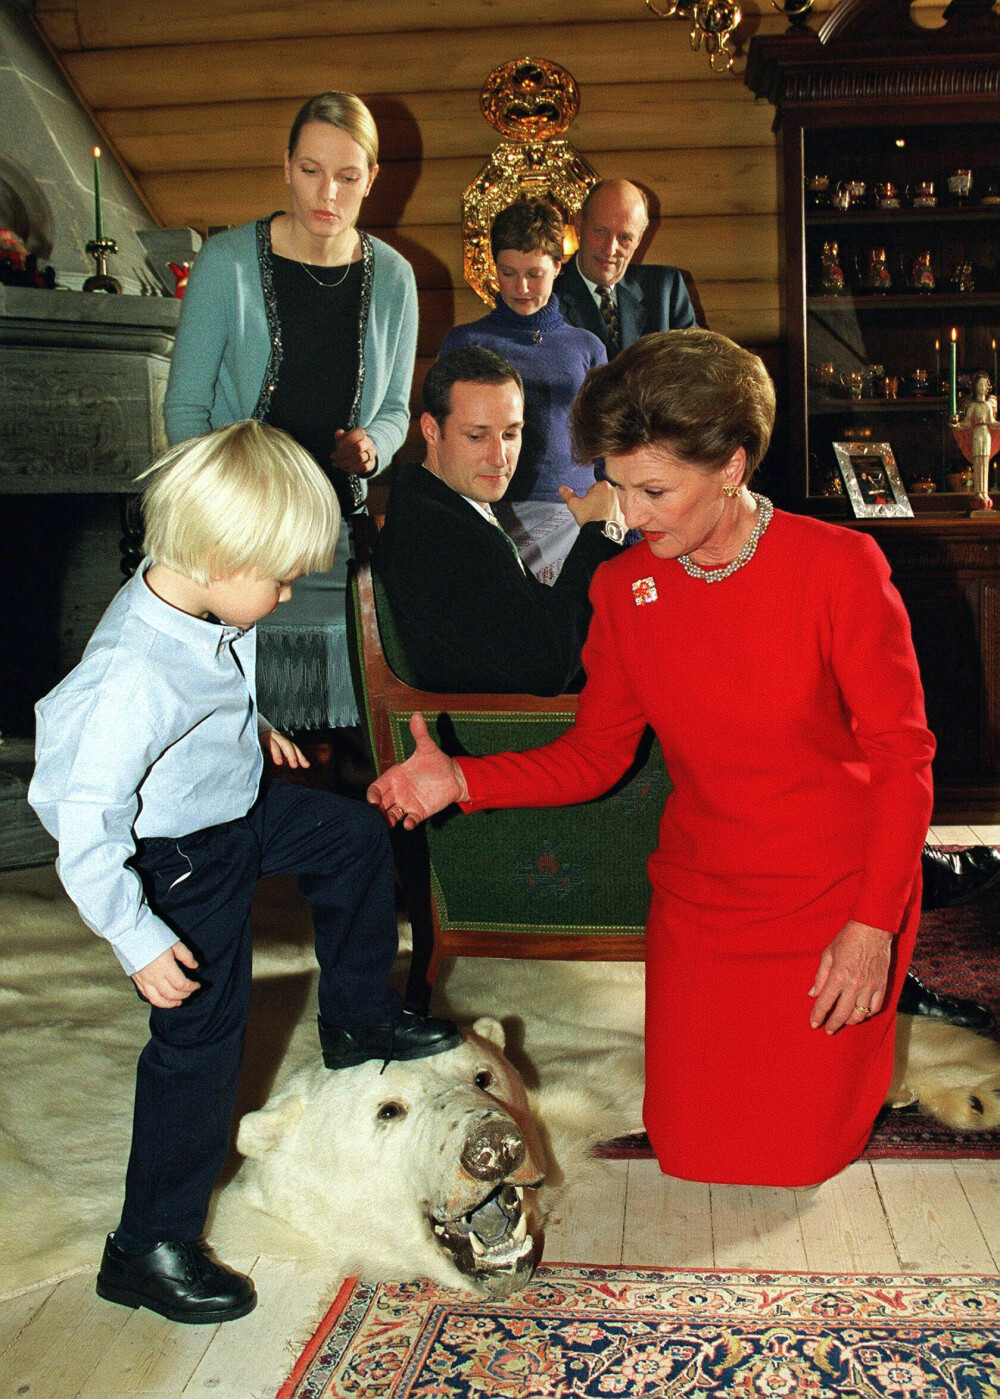 FAMILIEJUL: For første gang var Mette-Marit og Marius med på den offisielle julefotograferingen i 2000. Dronning Sonja gikk ned på kne for å hjelpe bonusbarnebarnet å komme seg opp på isbjørnhodet på gulvet på Kongsseteren.